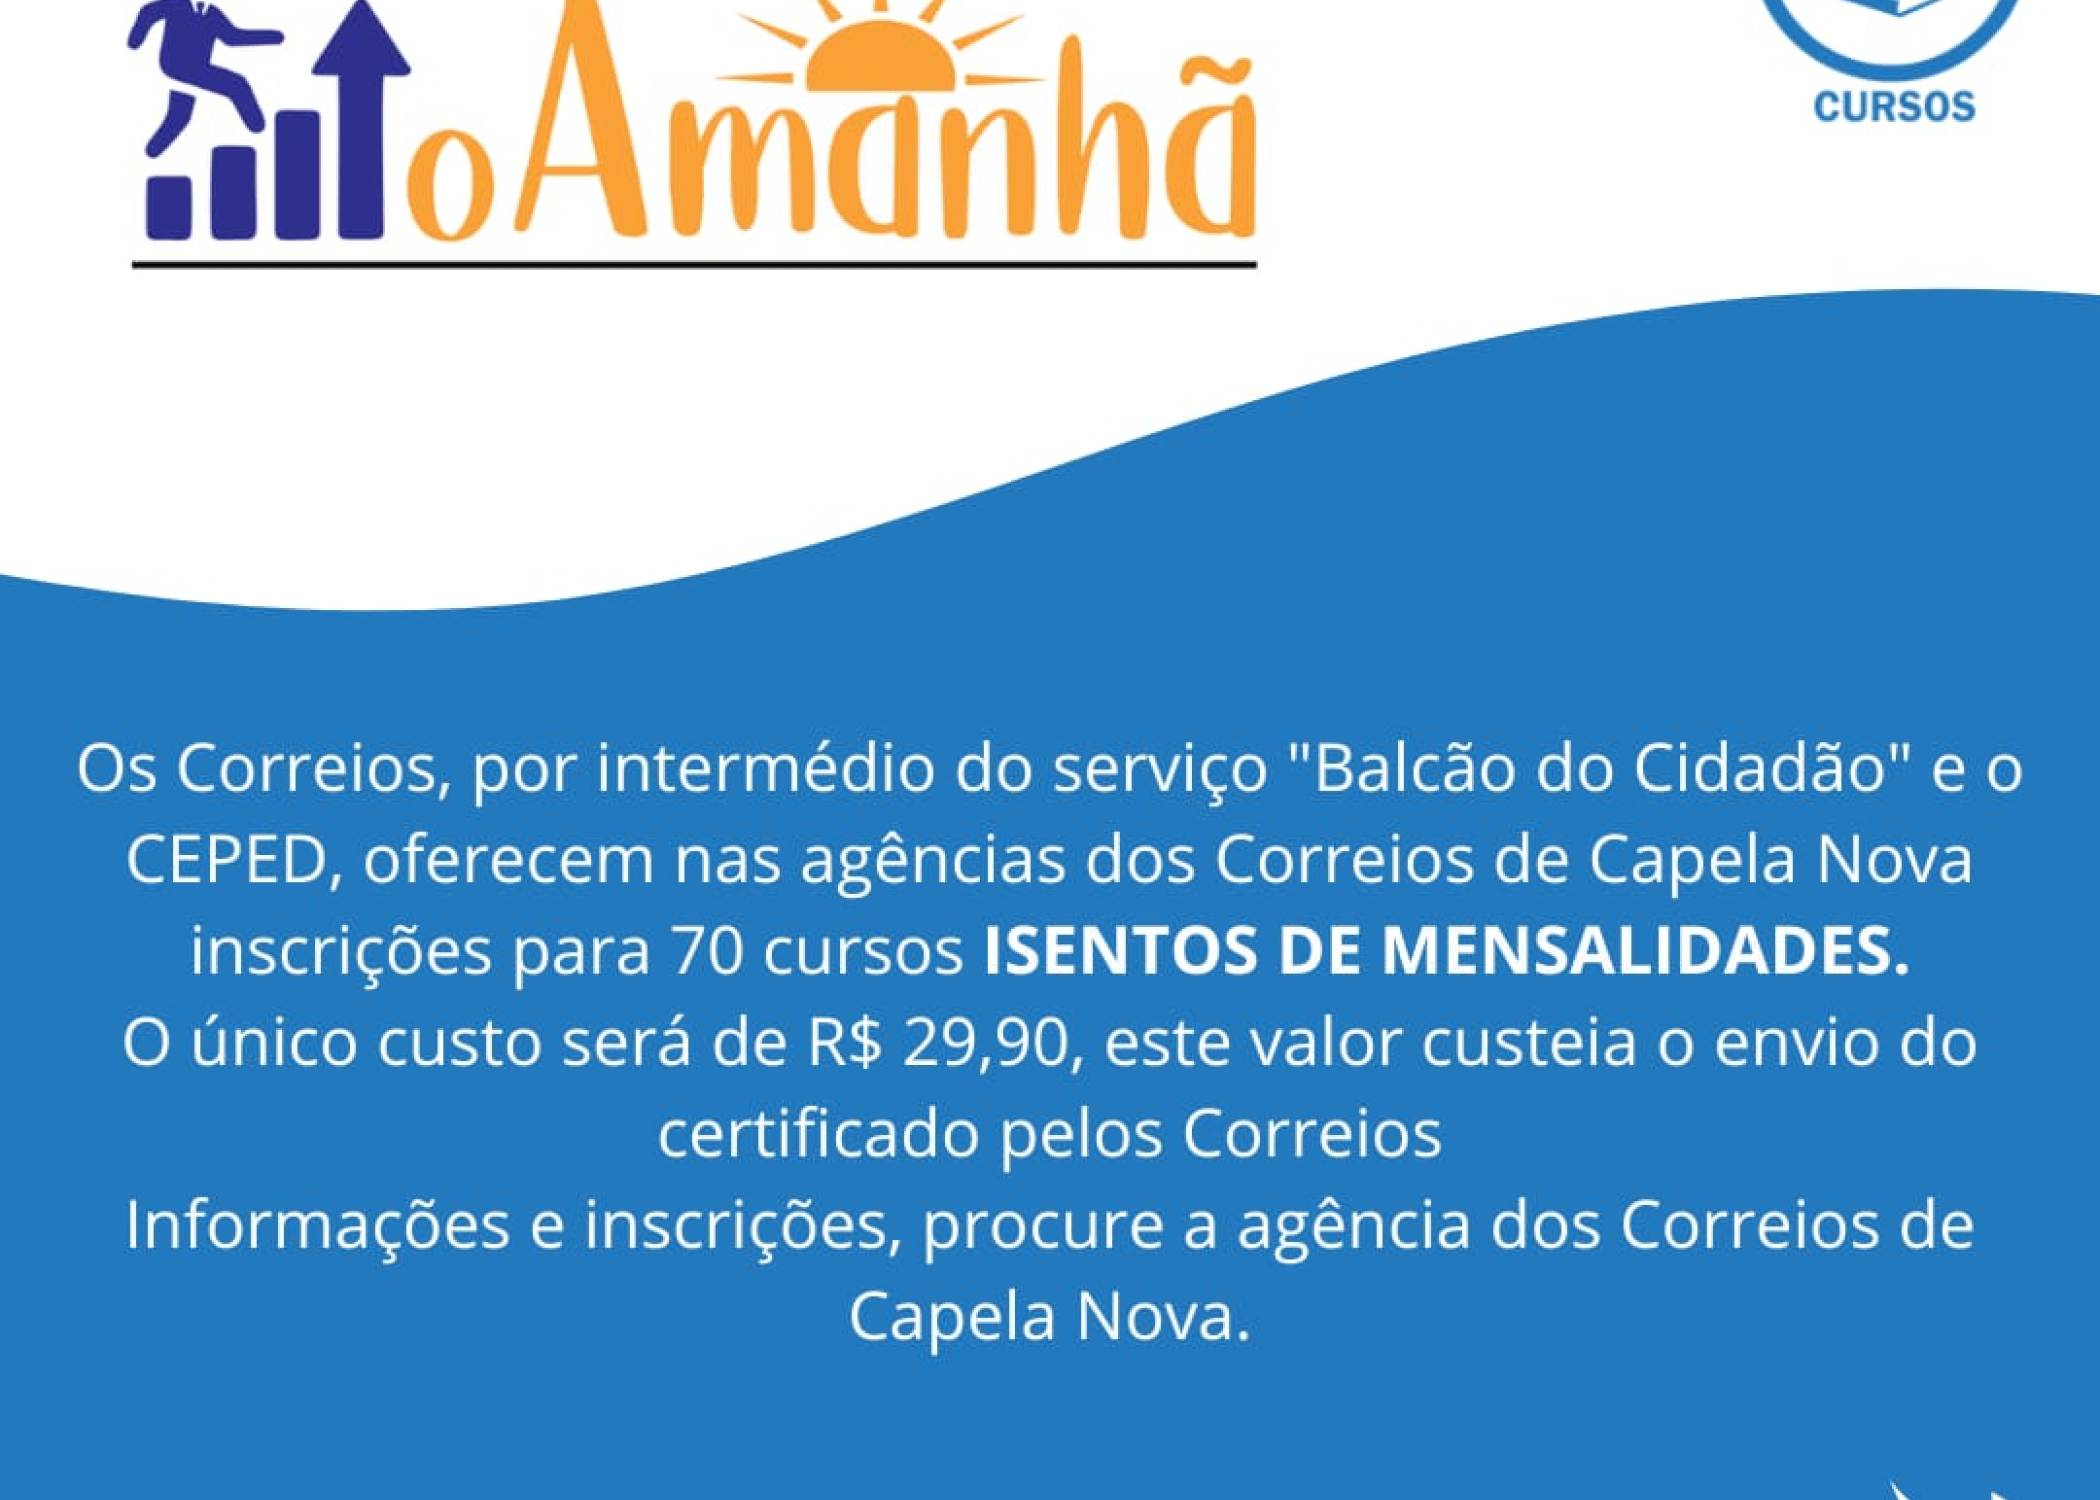   Os Correios de Capela Nova oferece inscrições para 70 cursos INSENTOS DE MENSALIDADE